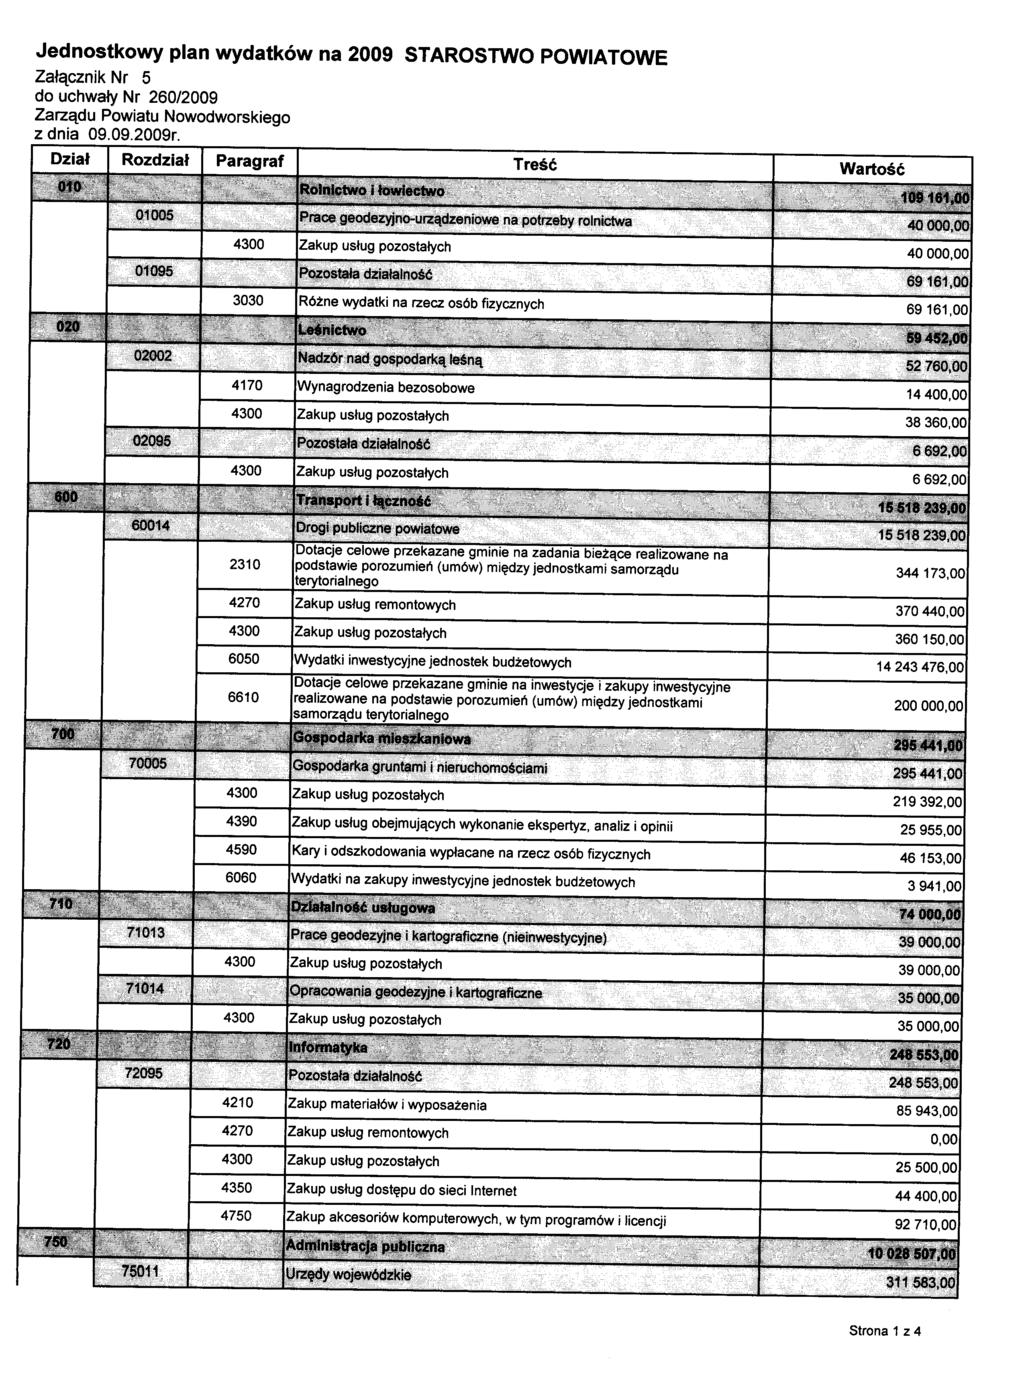 Jednostkowy plan wydatków na 2009 STAROSTWO POWIATOWE Załącznik Nr 5 do uchwały Nr 260/2009 Zarządu Powiatu Nowodworskiego z dnia 09.09.2009r.